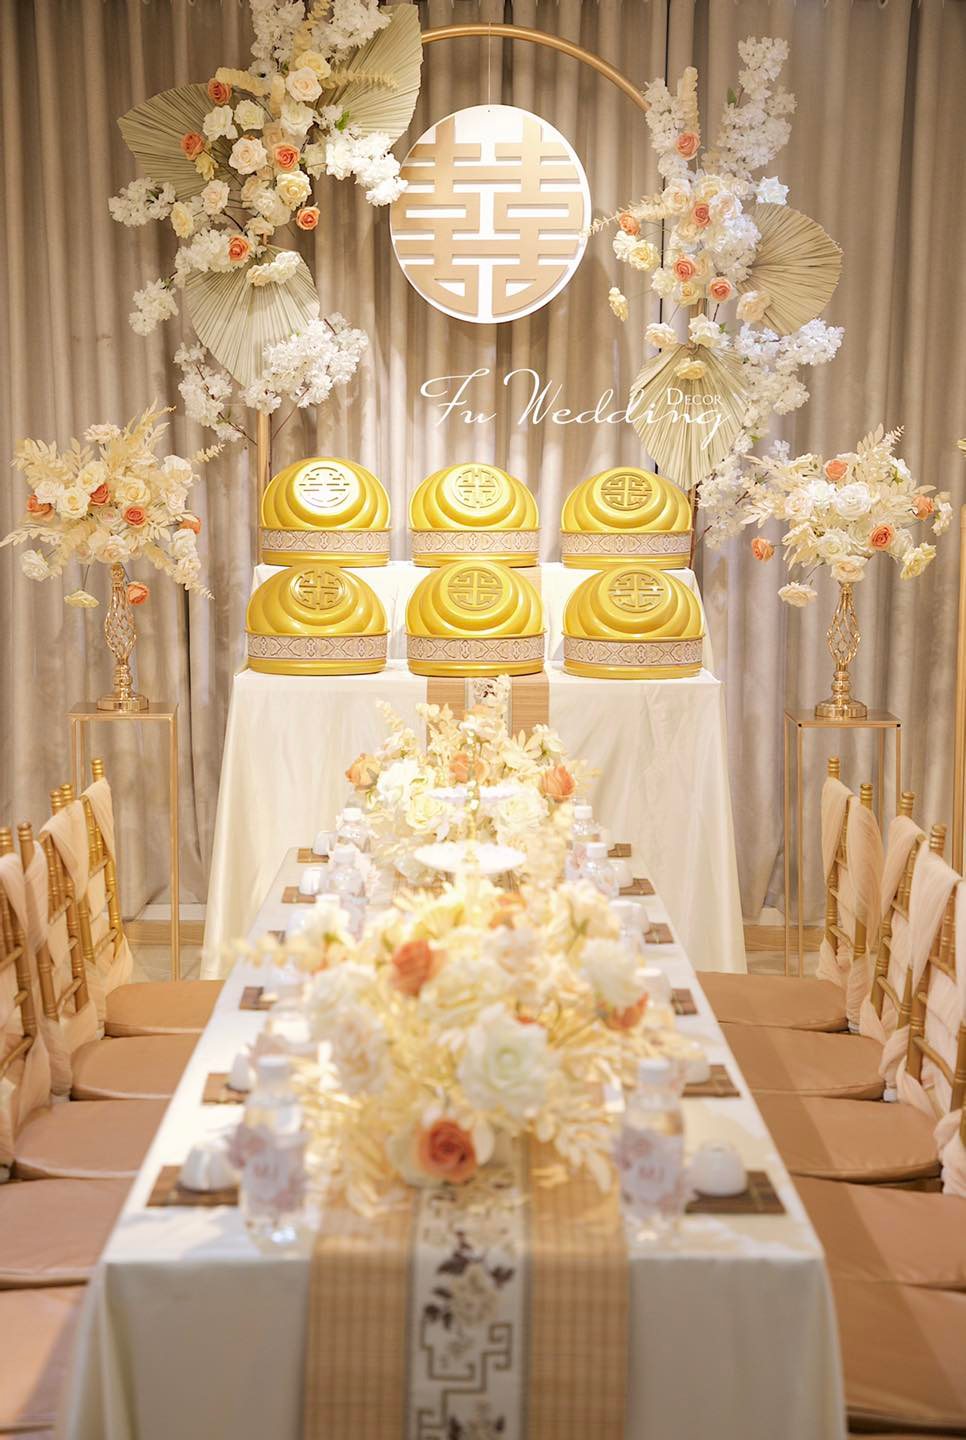 Trang trí gia tiên màu be nhã nhặn với hoa màu cam nâu và điểm nhấn là bộ tráp cưới vàng ánh kim dành cho cô dâu mạng Kim.  - Facebook